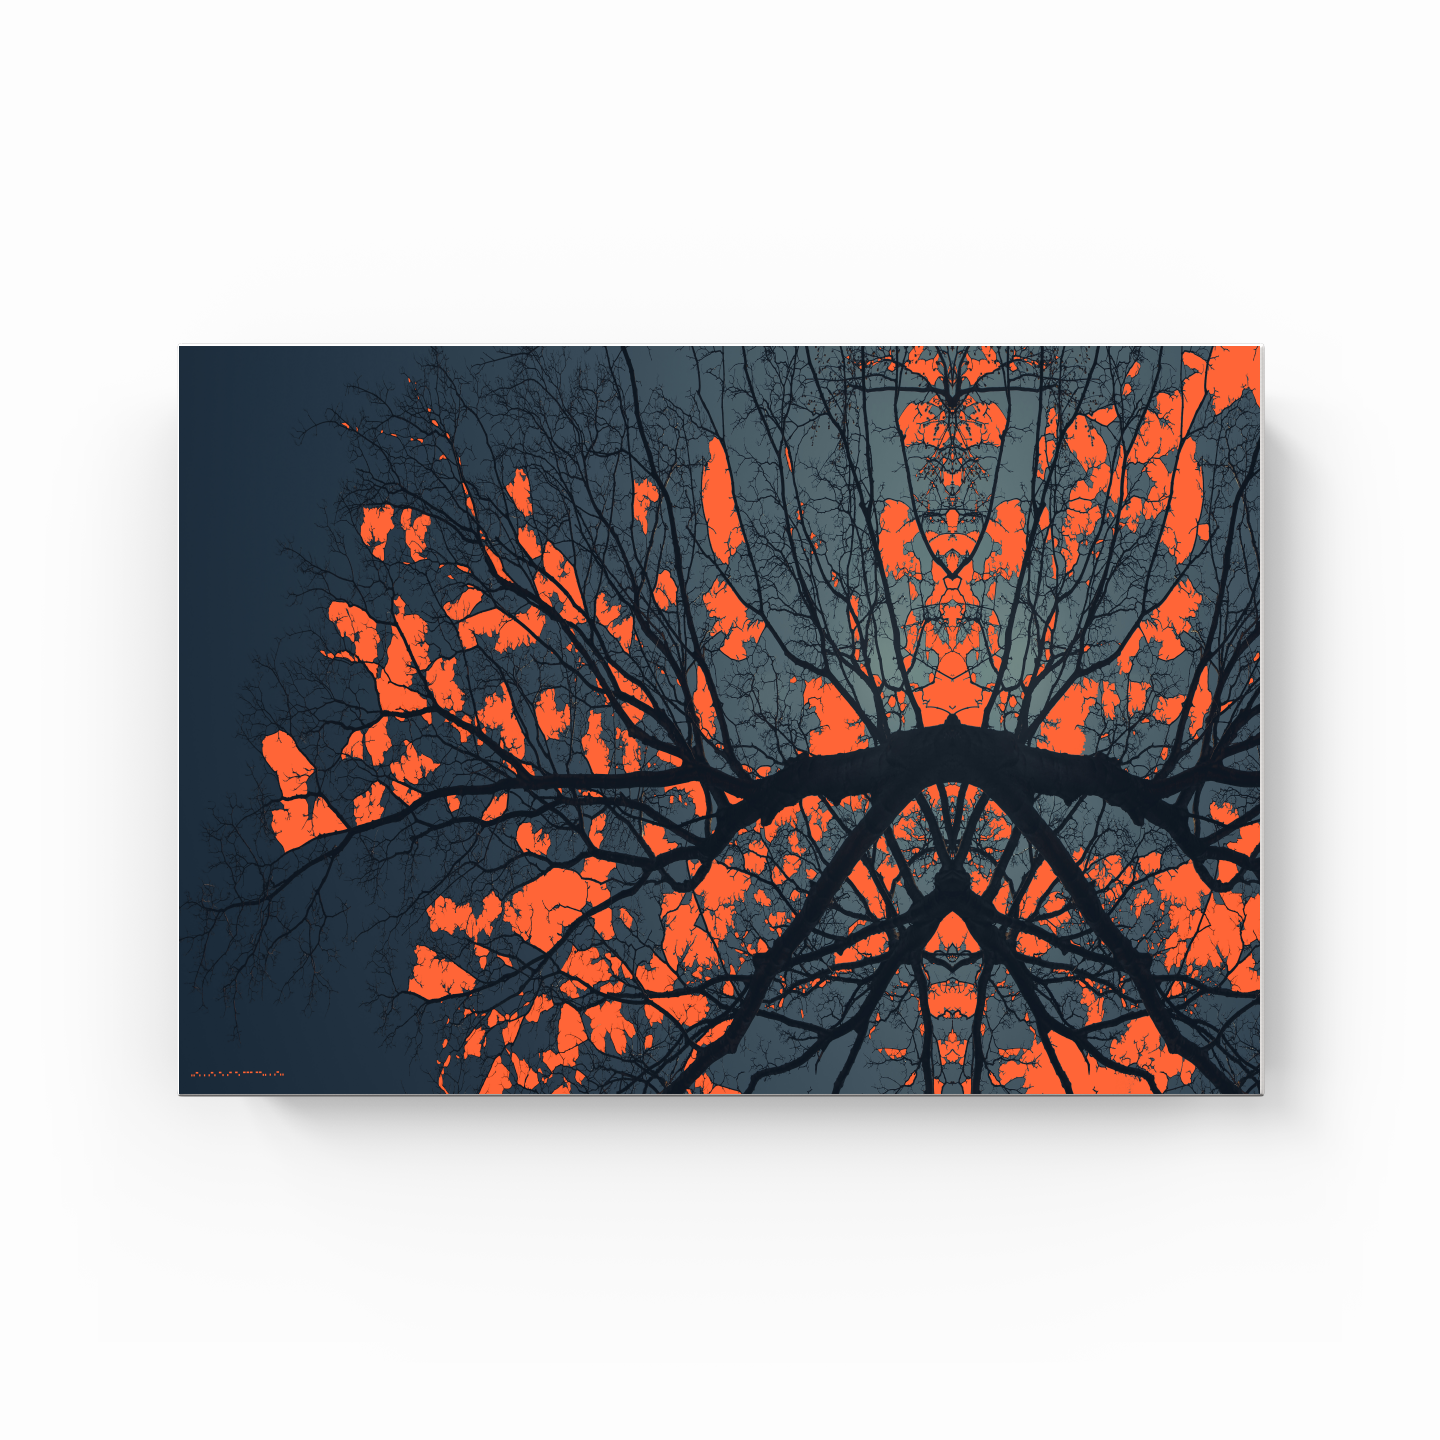 Simetri Ağaç Dal Orman Ekspresyonist Abstrakt Manzara No 03 - Kanvas Tablo